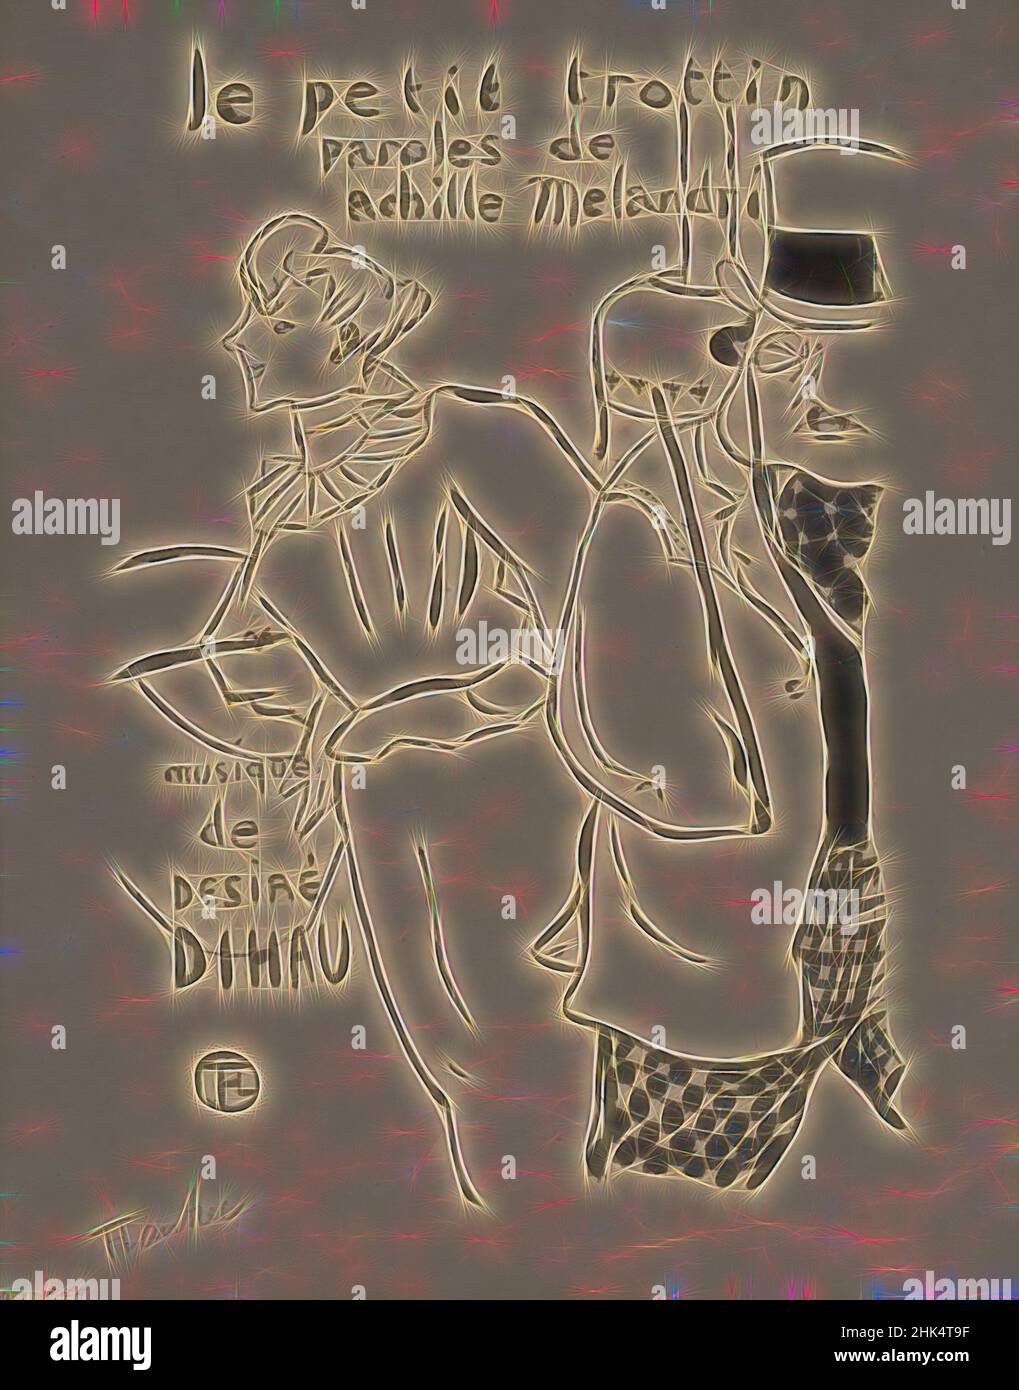 Inspiriert von Le Petit Trottin, Henri de Toulouse-Lautrec, französisch, 1864-1901, Lithographie auf Japan-Papier, 1893, 10 3/4 x 7 5/16 Zoll, 27,3 x 18,6 cm, neu erfunden von Artotop. Klassische Kunst neu erfunden mit einem modernen Twist. Design von warmen fröhlichen Leuchten der Helligkeit und Lichtstrahl Strahlkraft. Fotografie inspiriert von Surrealismus und Futurismus, umarmt dynamische Energie der modernen Technologie, Bewegung, Geschwindigkeit und Kultur zu revolutionieren Stockfoto